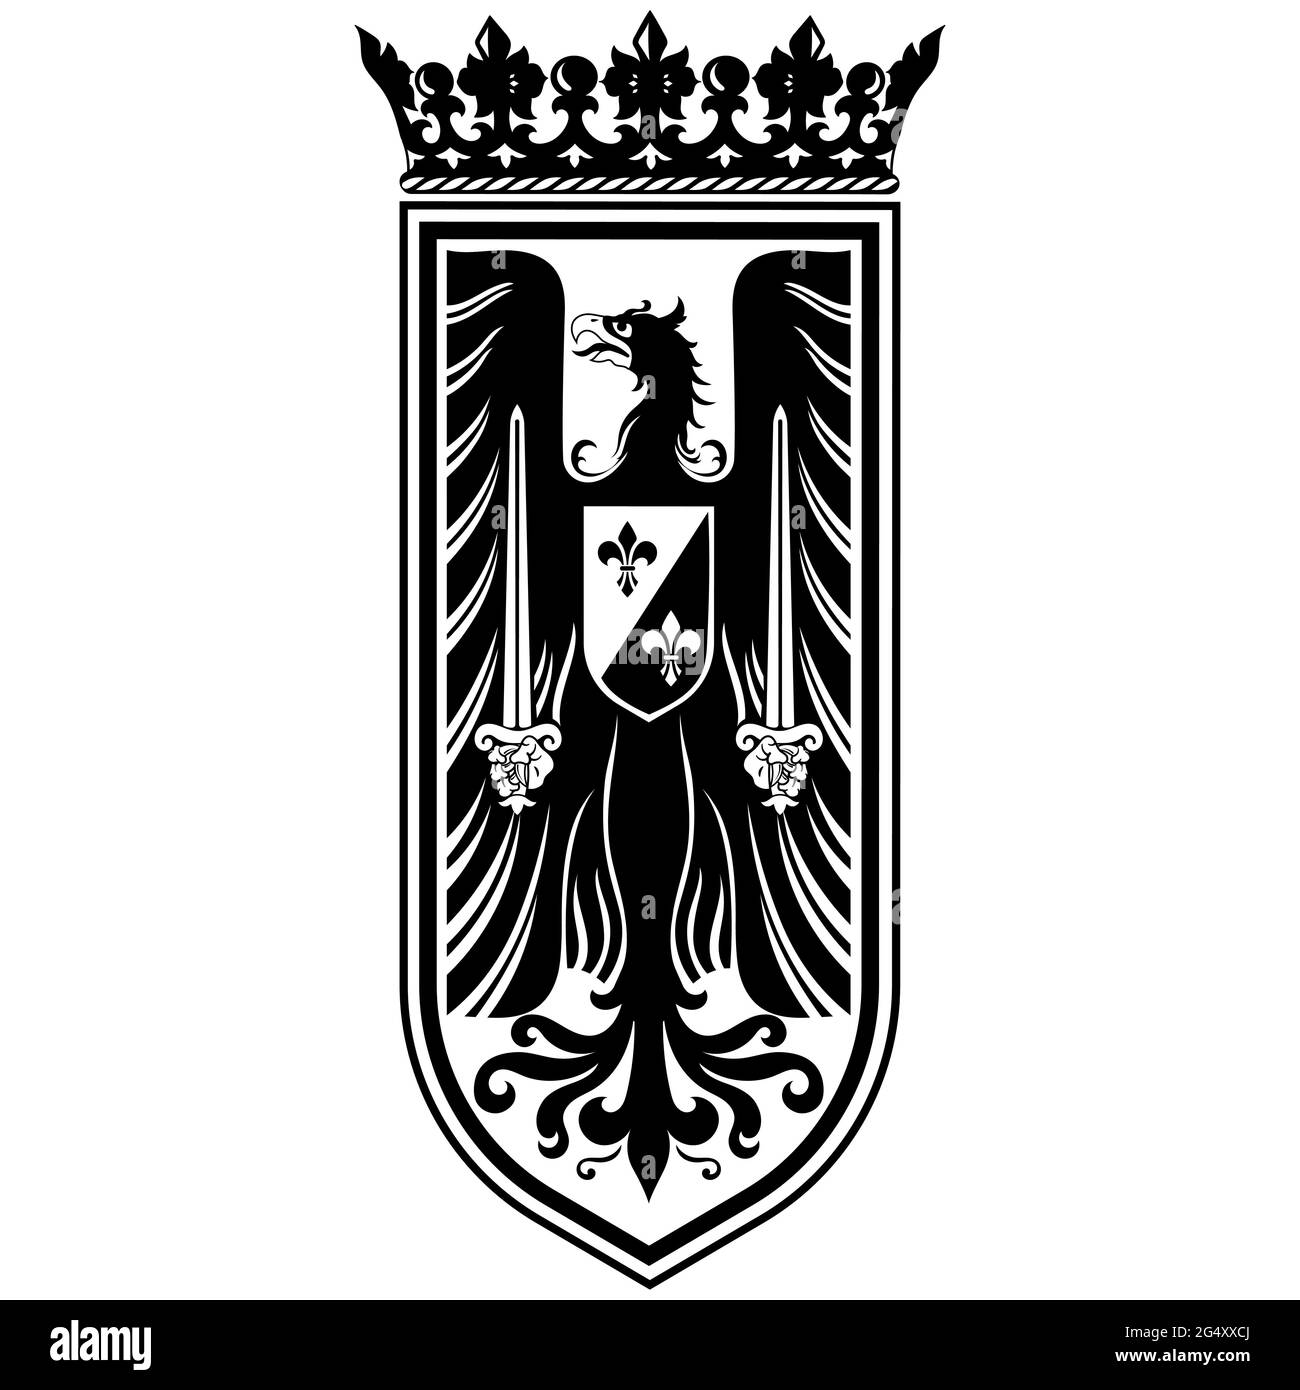 Ritterdesign. Mittelalterliches Wappentier, Wappadler und Ritterschild Stock Vektor